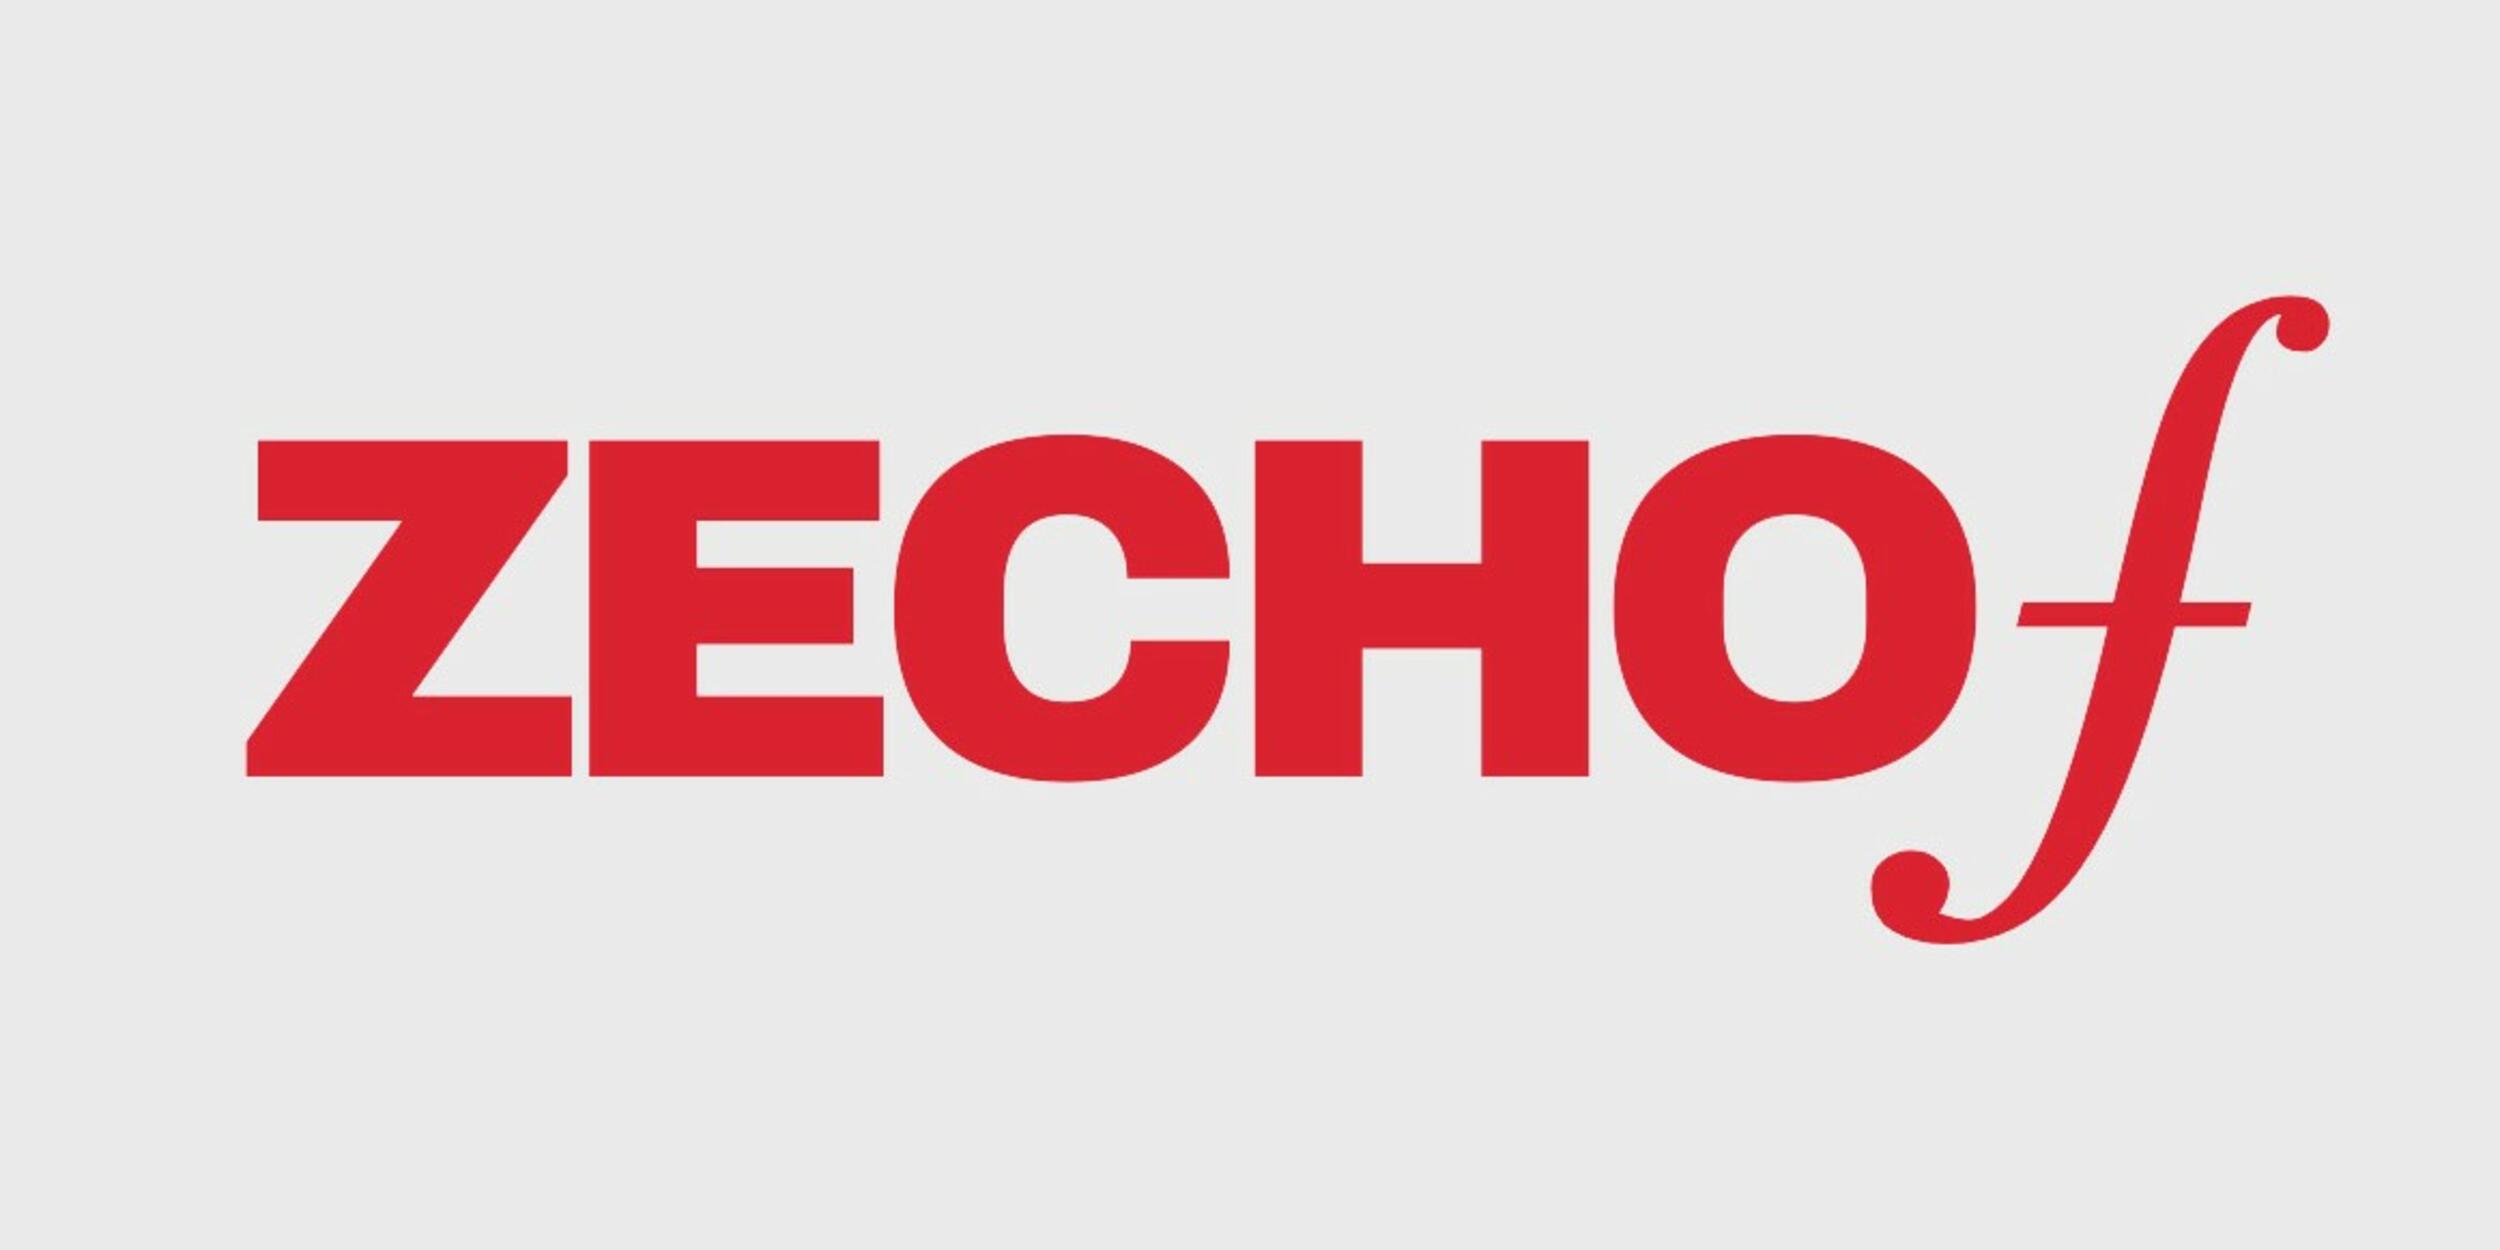 Roter Schriftzug "Zechof" auf grauem Hintergrund